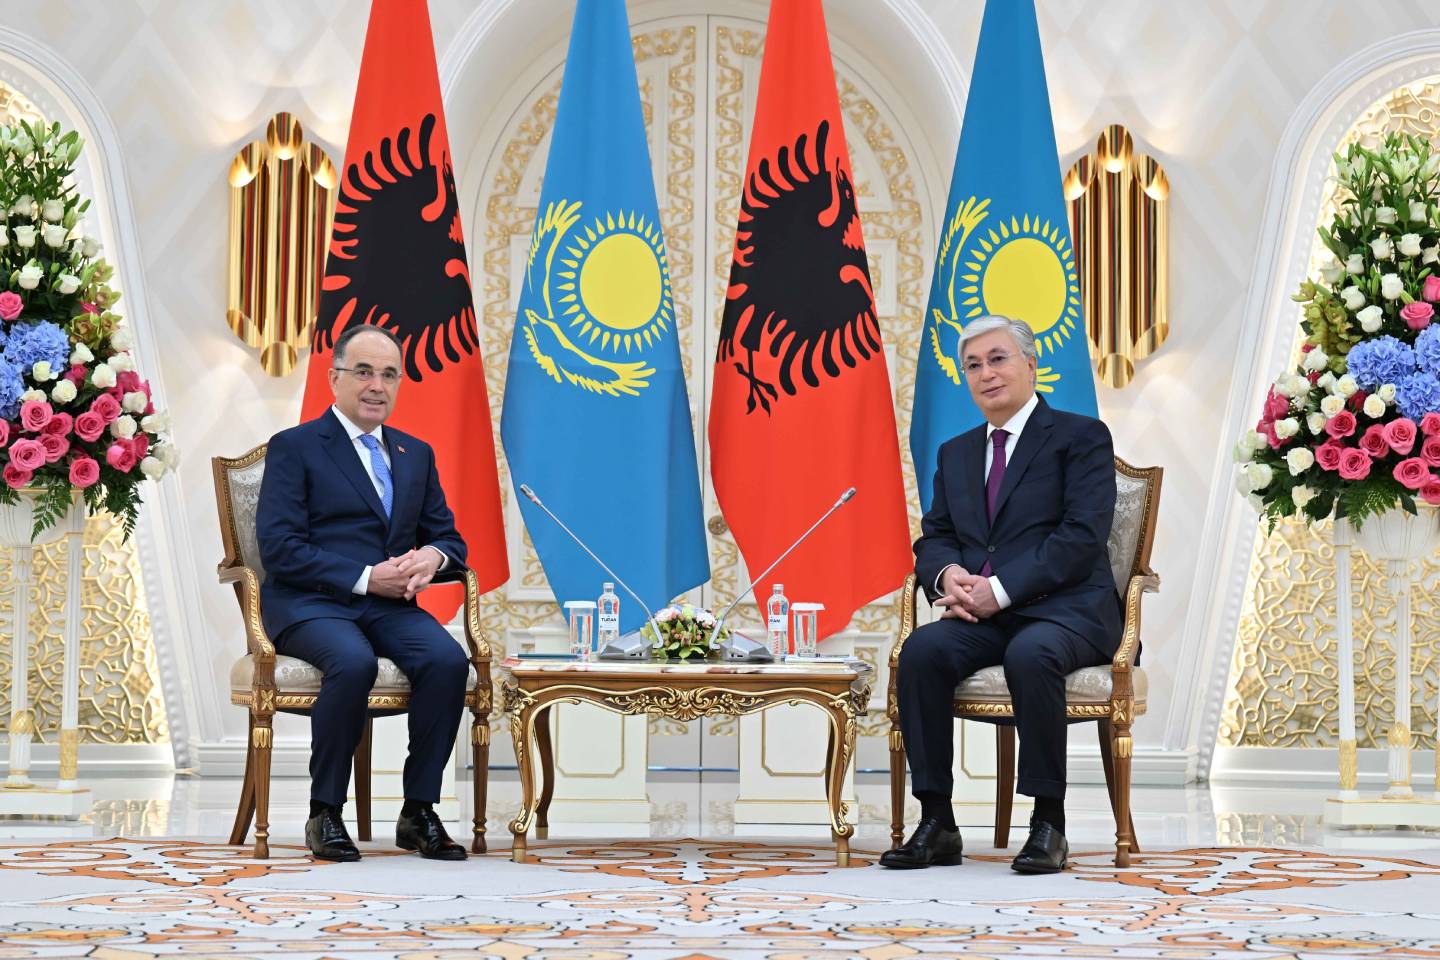 Новости мира / Политика в мире / Касым-Жомарт Токаев встретился с президентом Албании